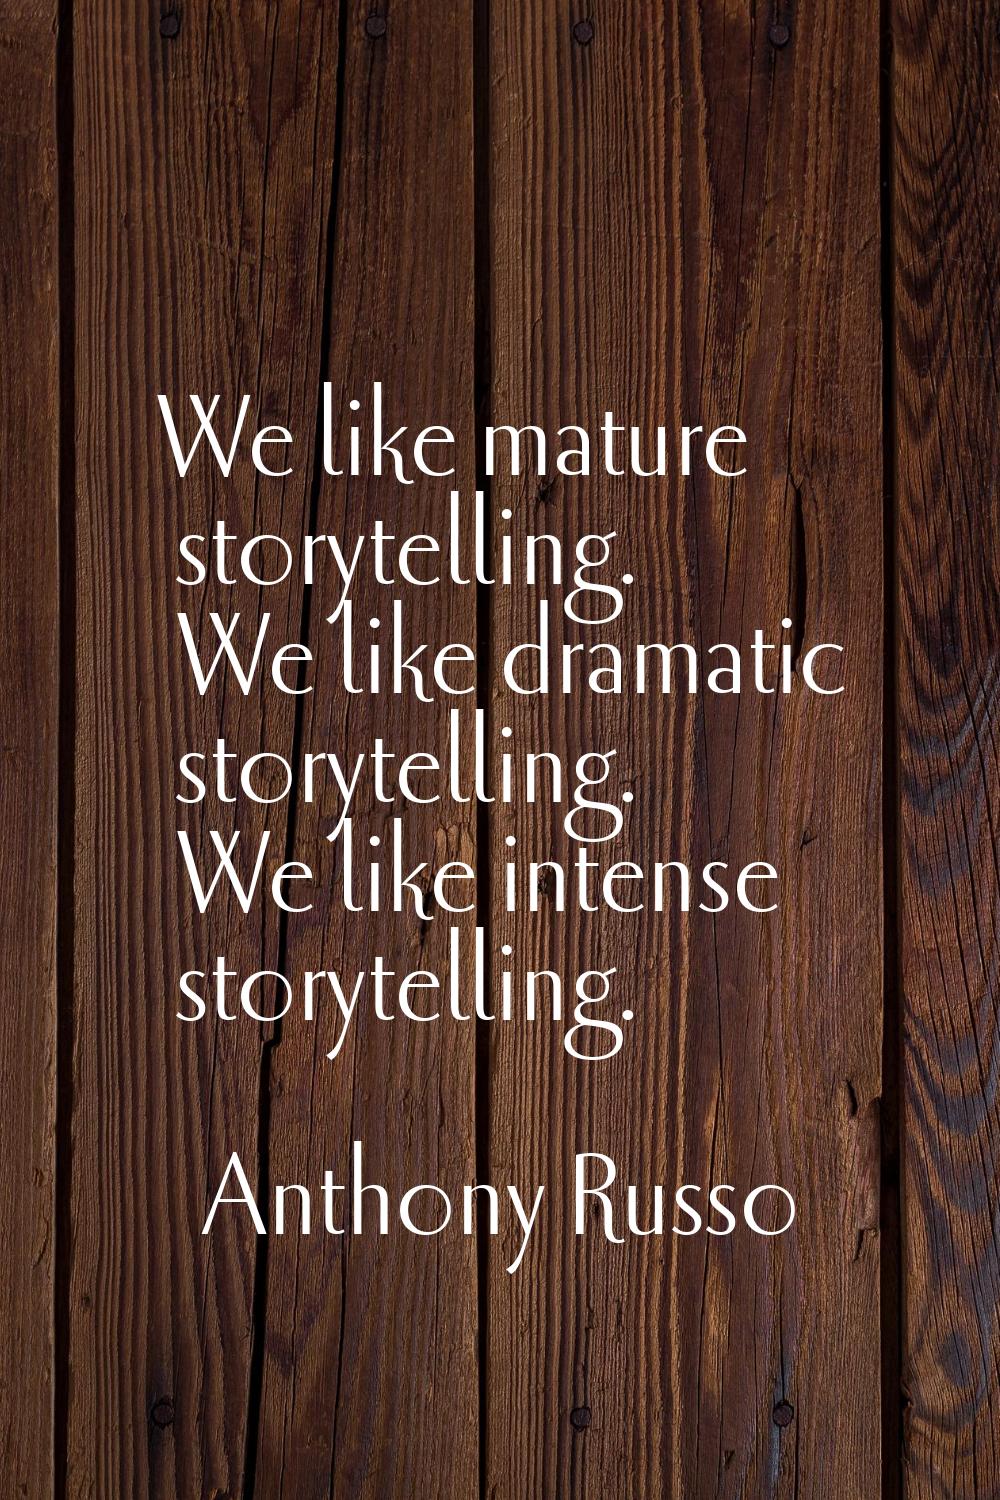 We like mature storytelling. We like dramatic storytelling. We like intense storytelling.